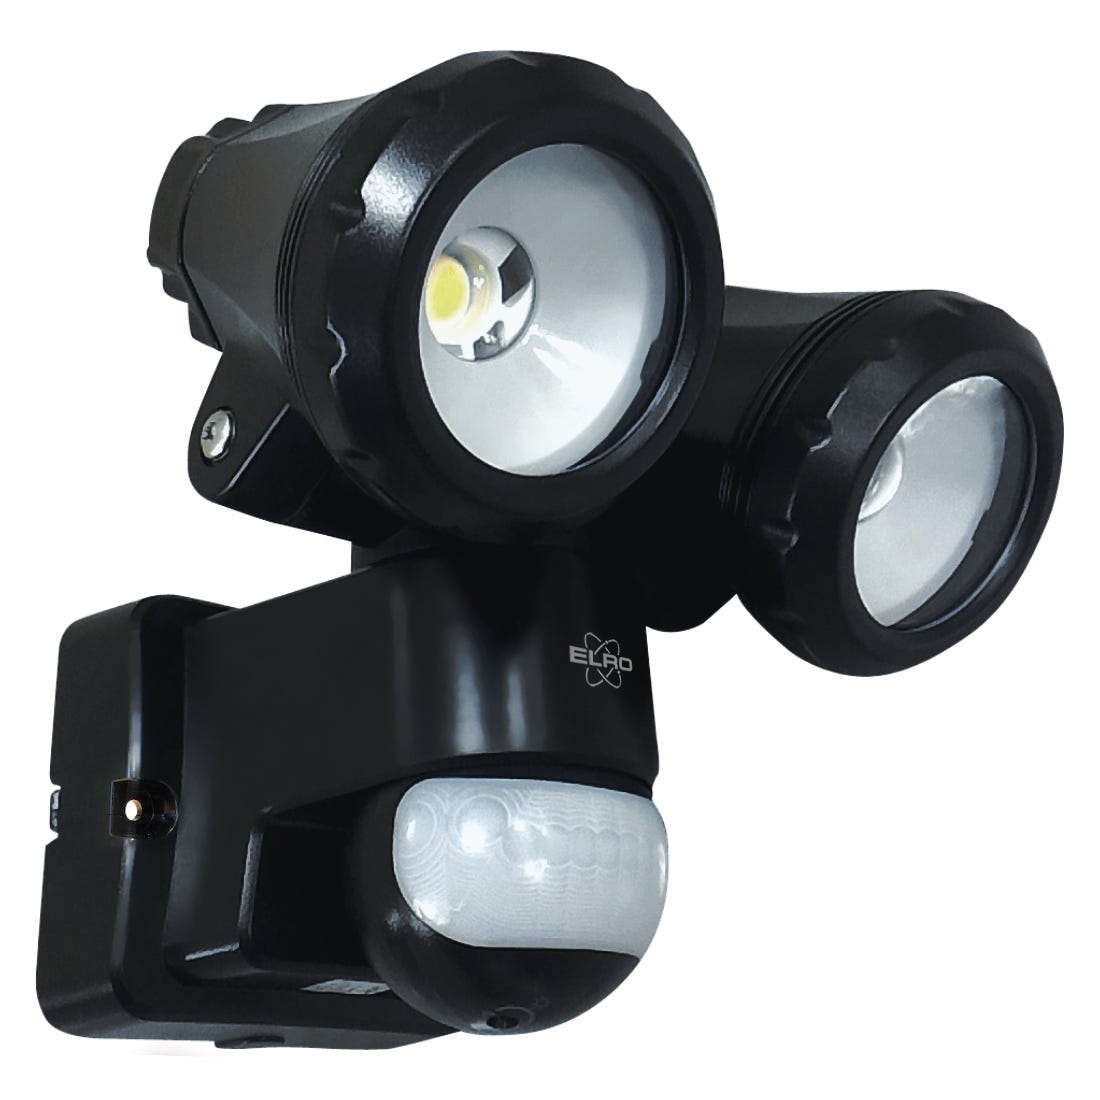 ELRO LF80 Lampe d'extérieur LED à 2 têtes avec détecteur de mouvement -  2x10W - 1400lm - IP54 Waterproof - Noir